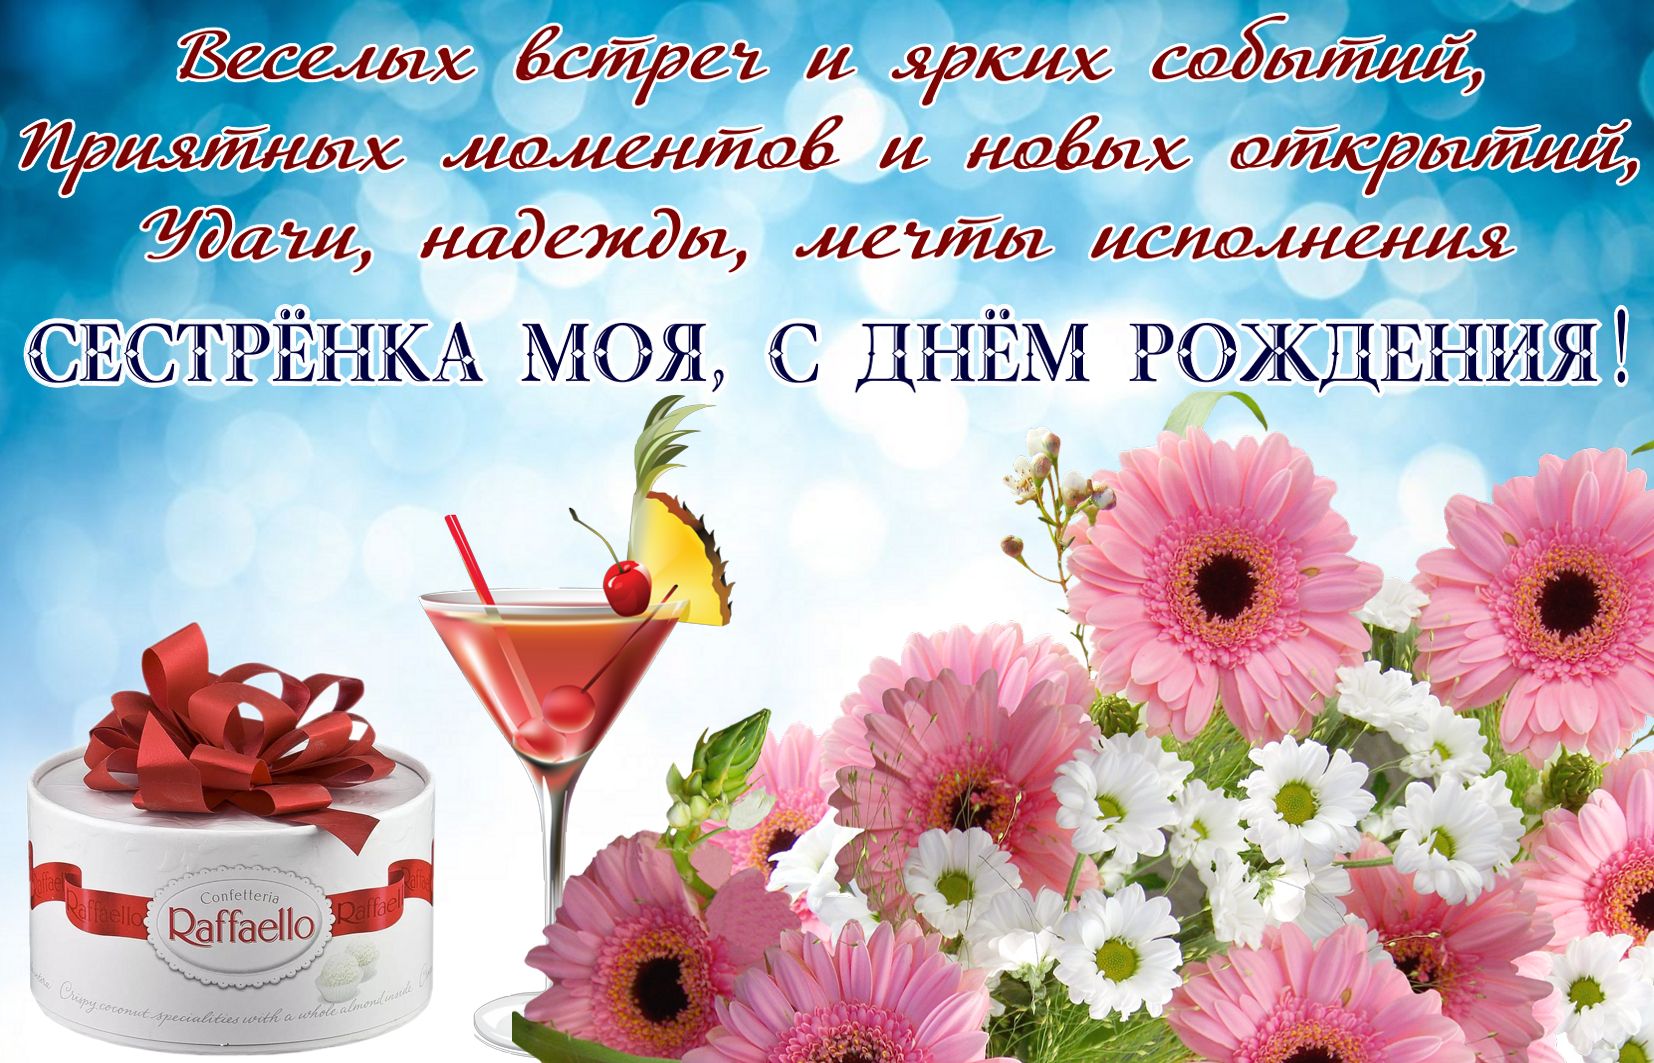 Цветы на день рождения сестре - фото и картинки steklorez69.ru